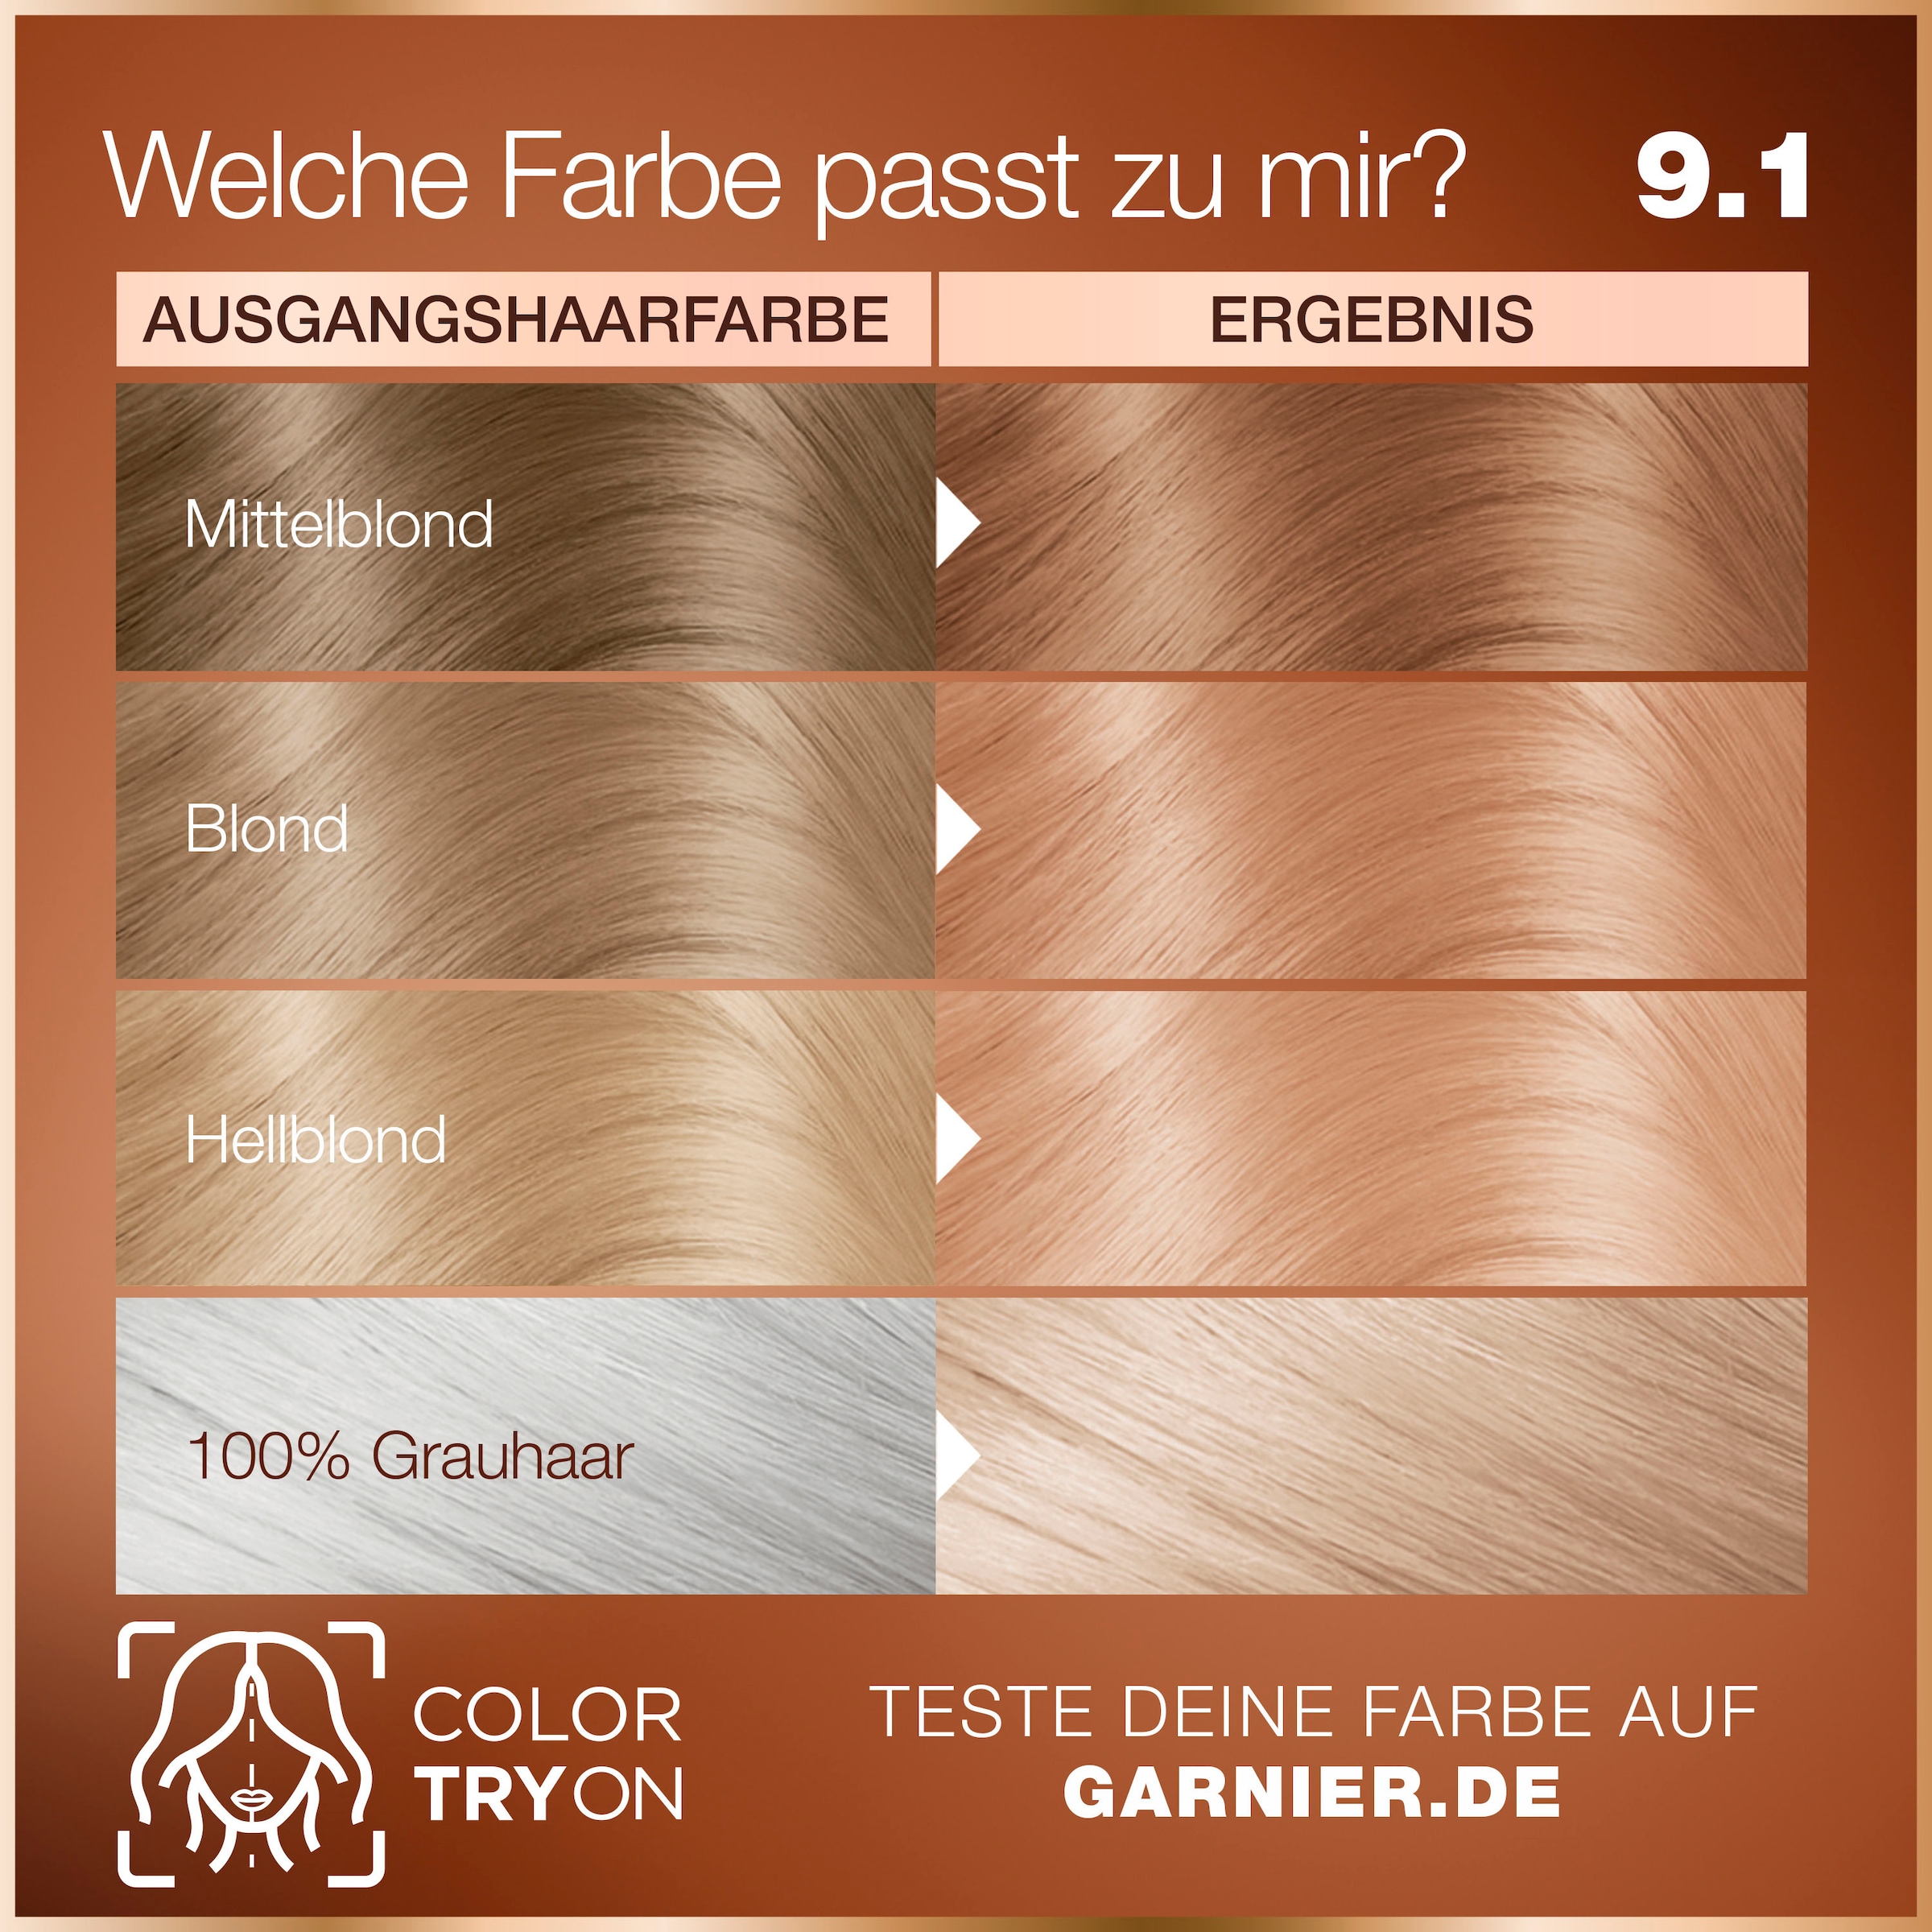 Coloration Dauerhafte GOOD bei GARNIER »Garnier Haarfarbe« OTTOversand